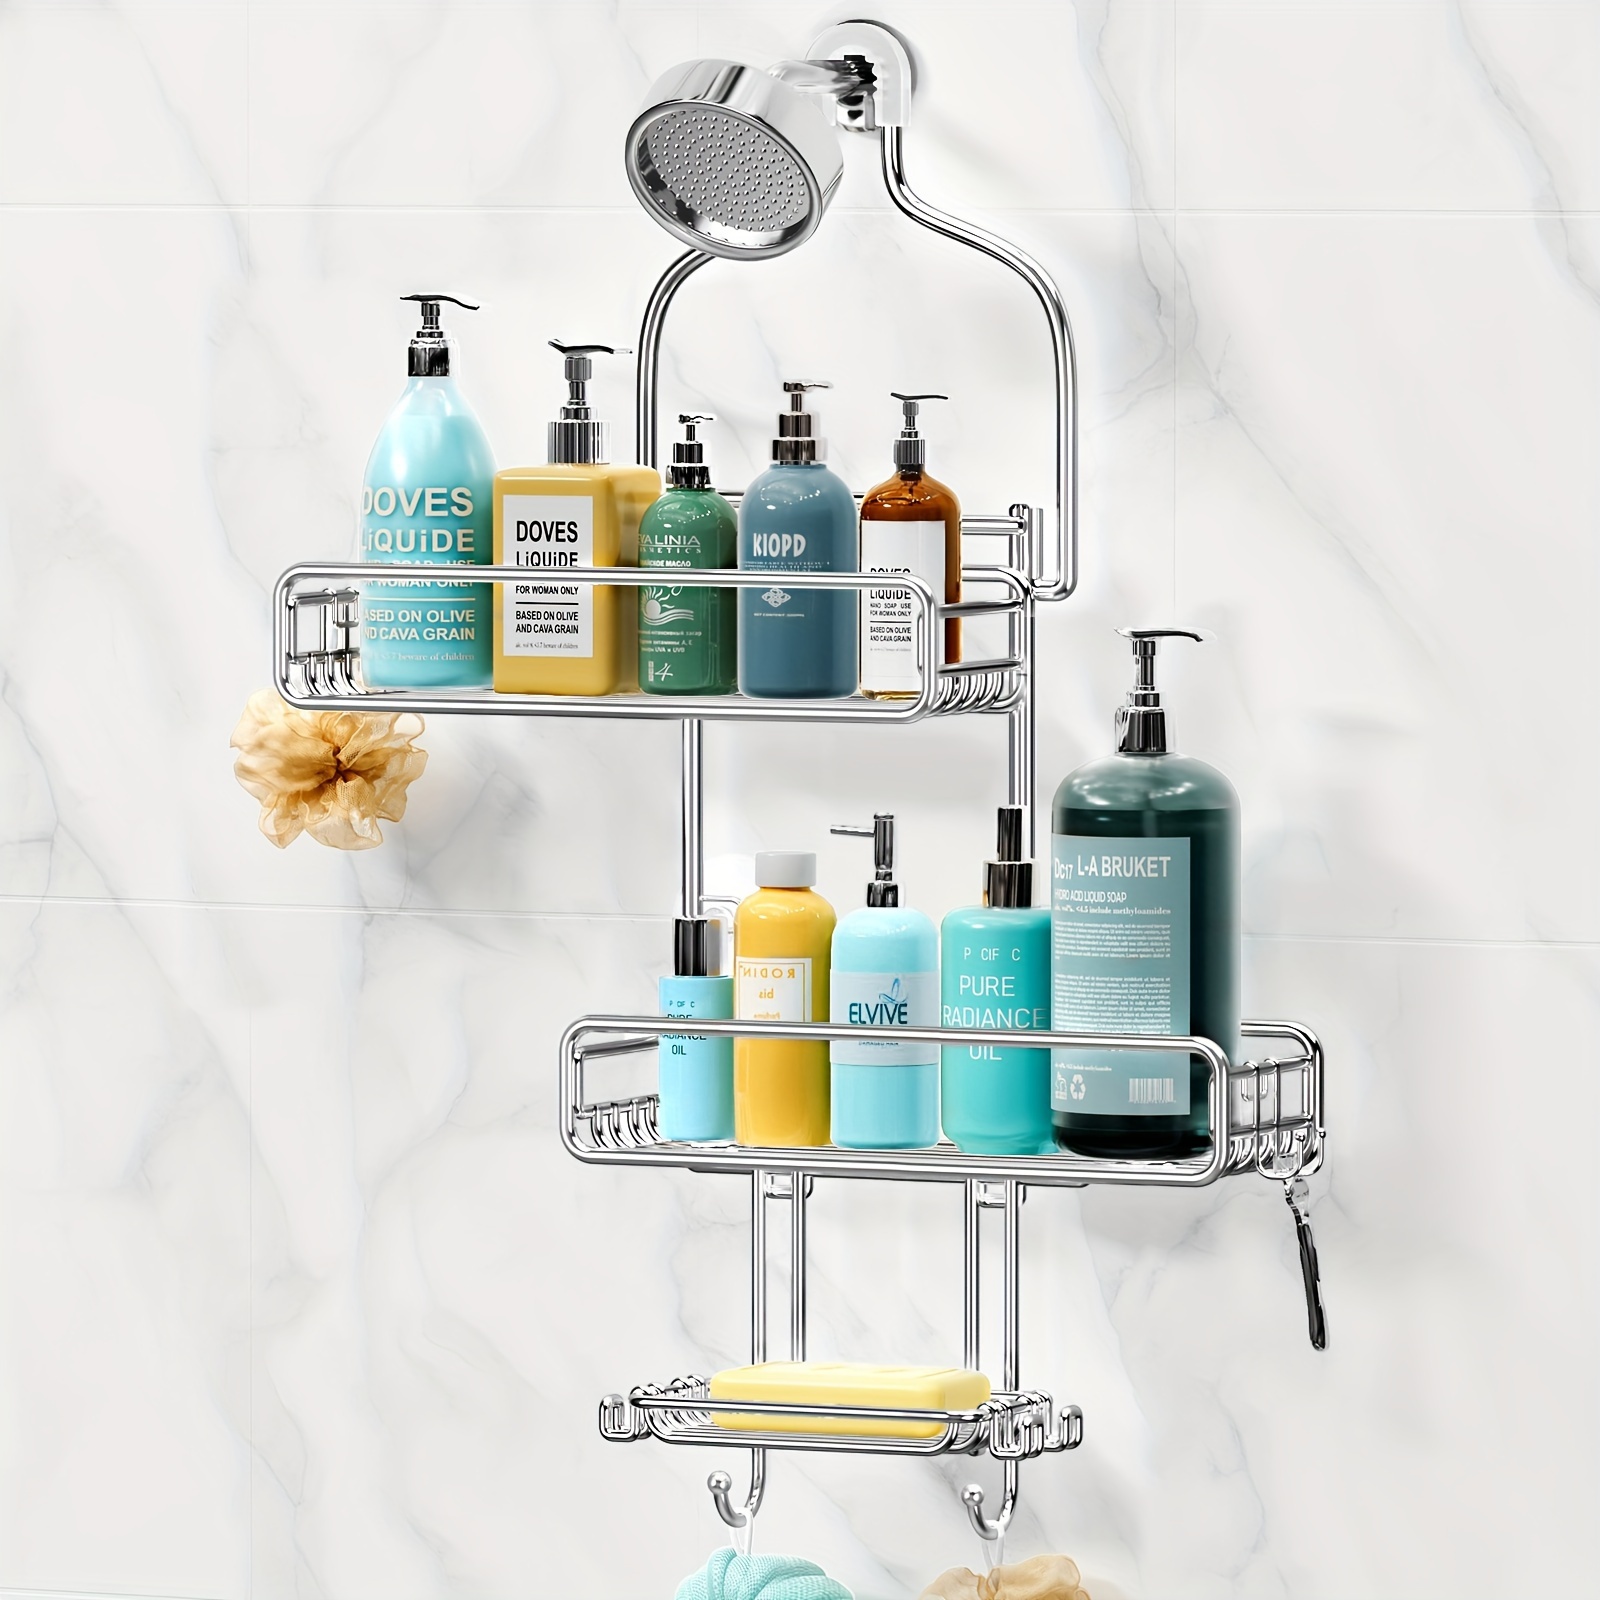 

Hanging Shower Over Shower : Adjustable Large Shower Organizer With Soap Holder - Rustproof Bathroom Shelf Shampoo Storage Rack - 4 Movable Hooks For Razor Loofah Silver